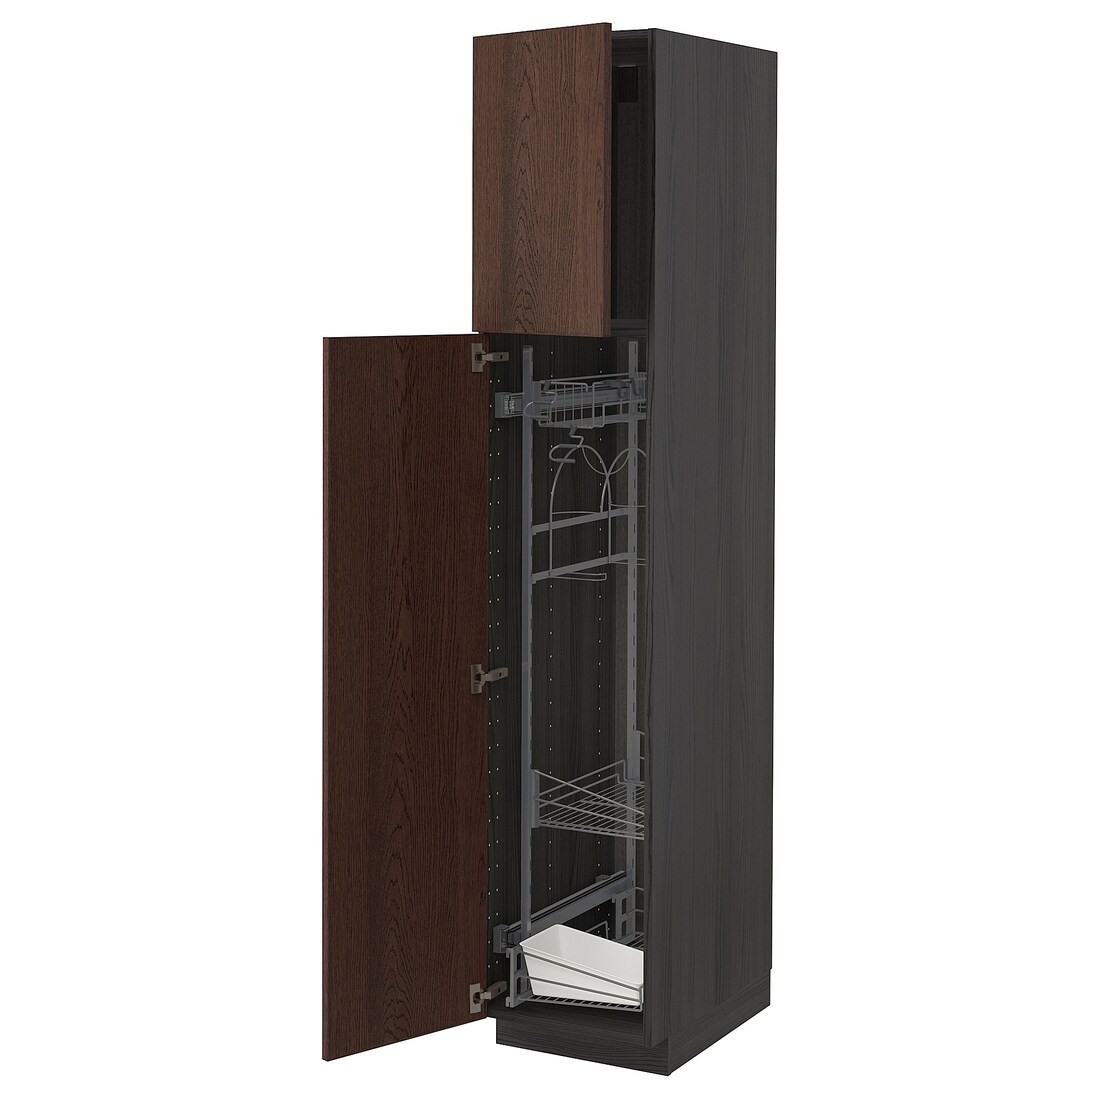 METOD МЕТОД Высокий шкаф с отделением для аксессуаров для уборки, черный / Sinarp коричневый, 40x60x200 см